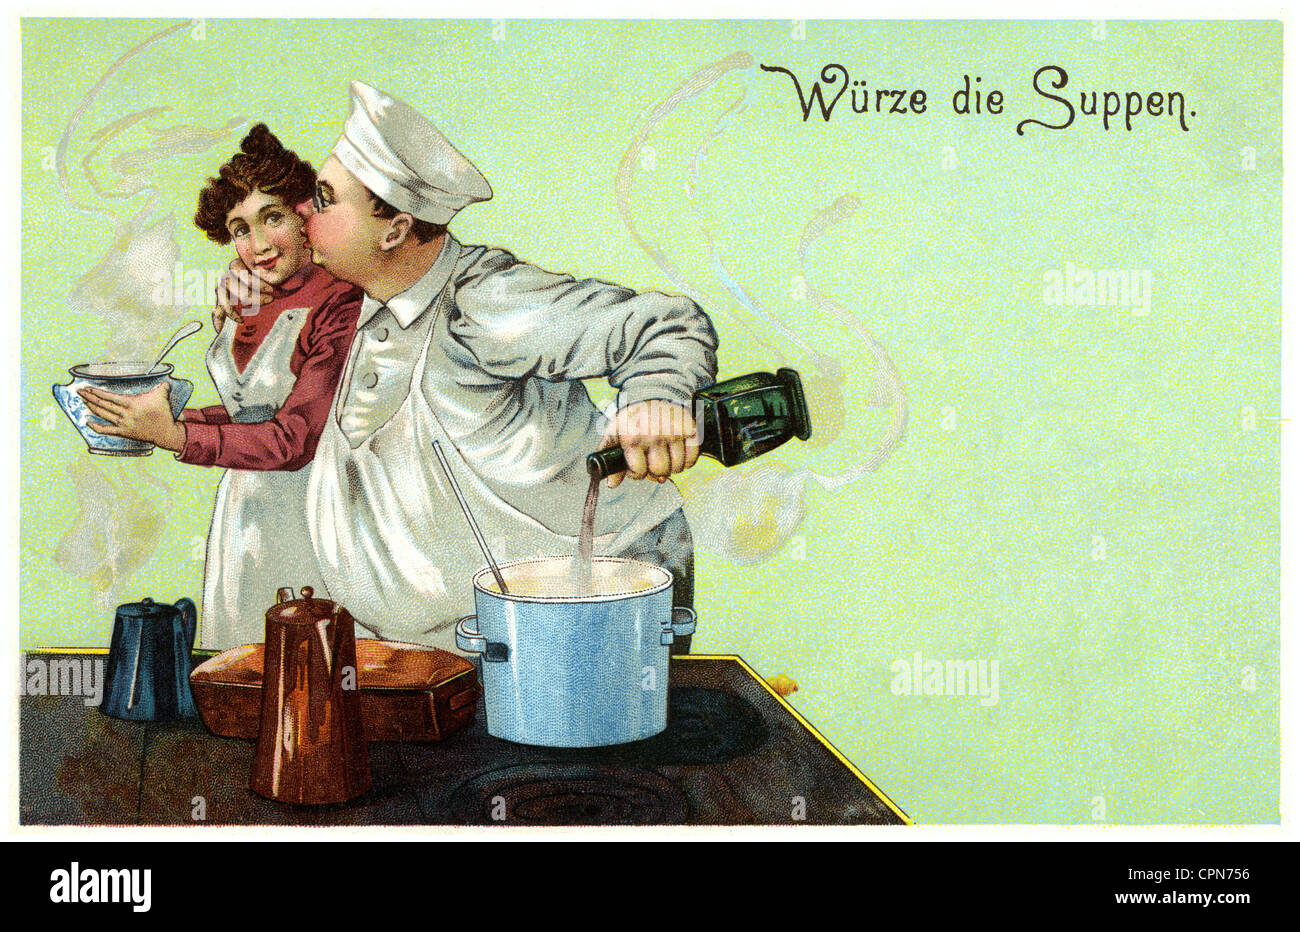 Haushalt, Koch, Koch küssen kochend, sagen: 'Wuerze die Suppen', Lithographie, Deutschland, 1902, Zusatzrechte-Clearences-nicht vorhanden Stockfoto